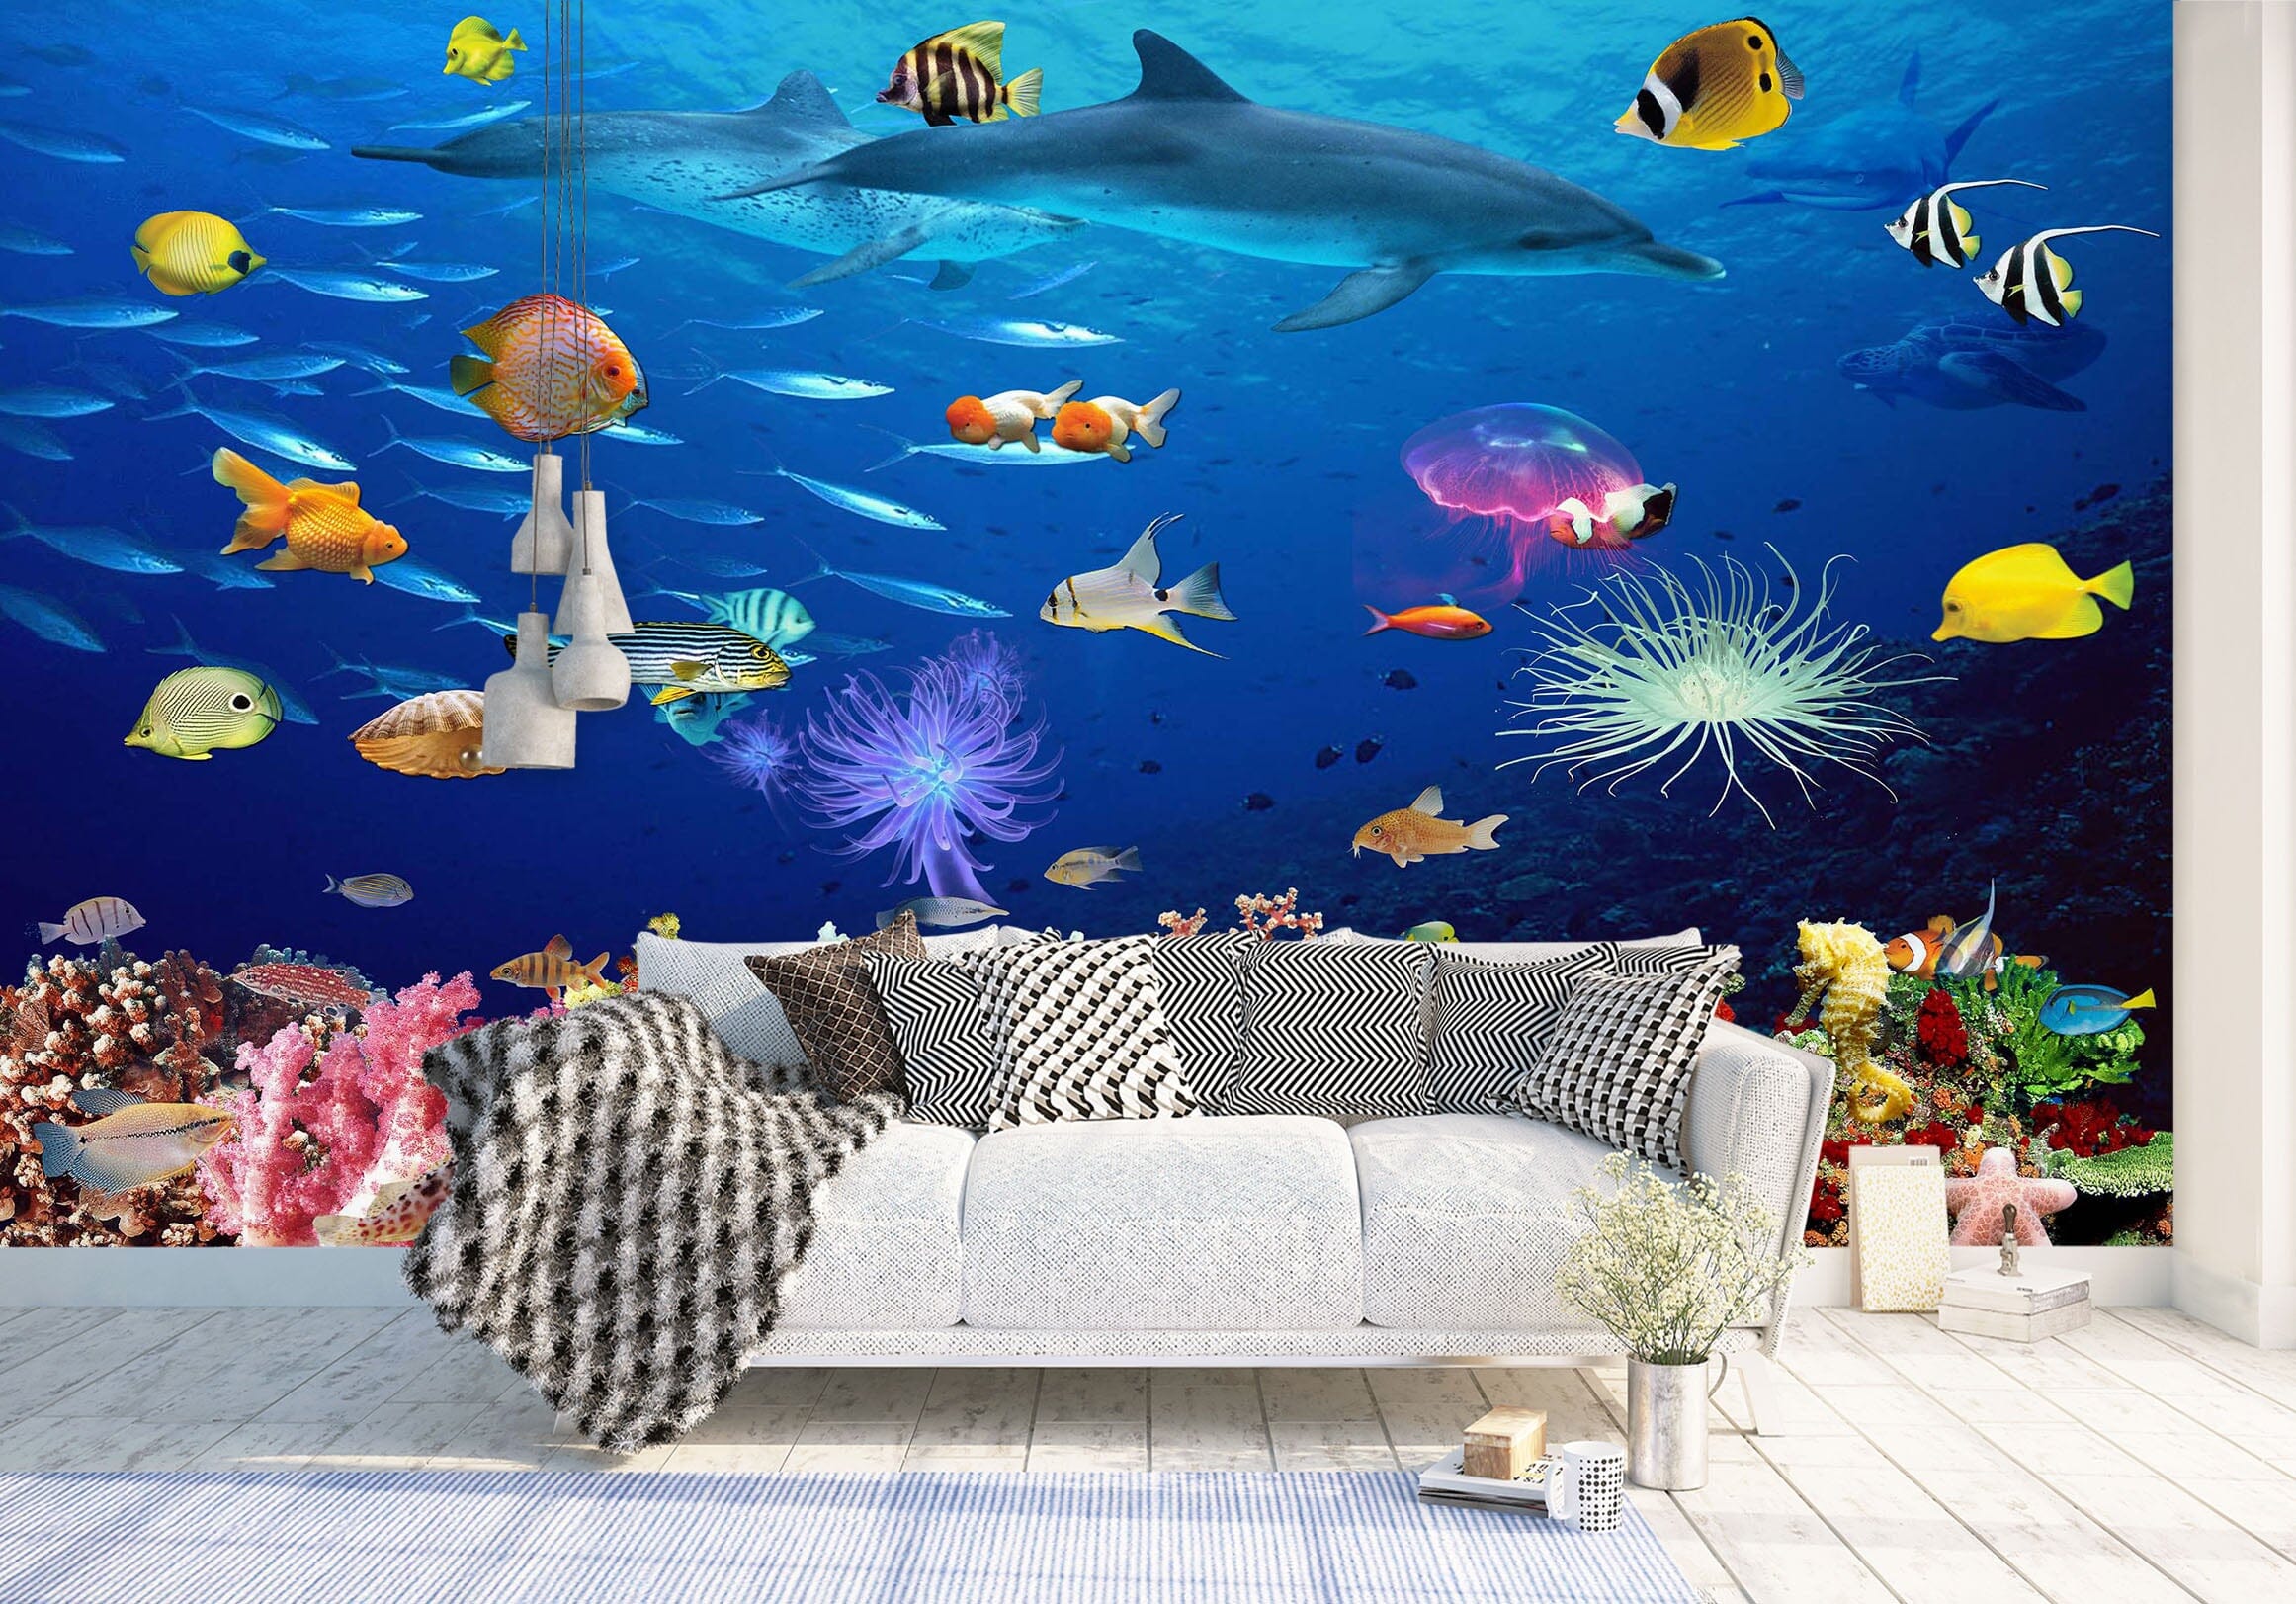 3D The Underwater World 1403 Wall Murals Wallpaper AJ Wallpaper 2 